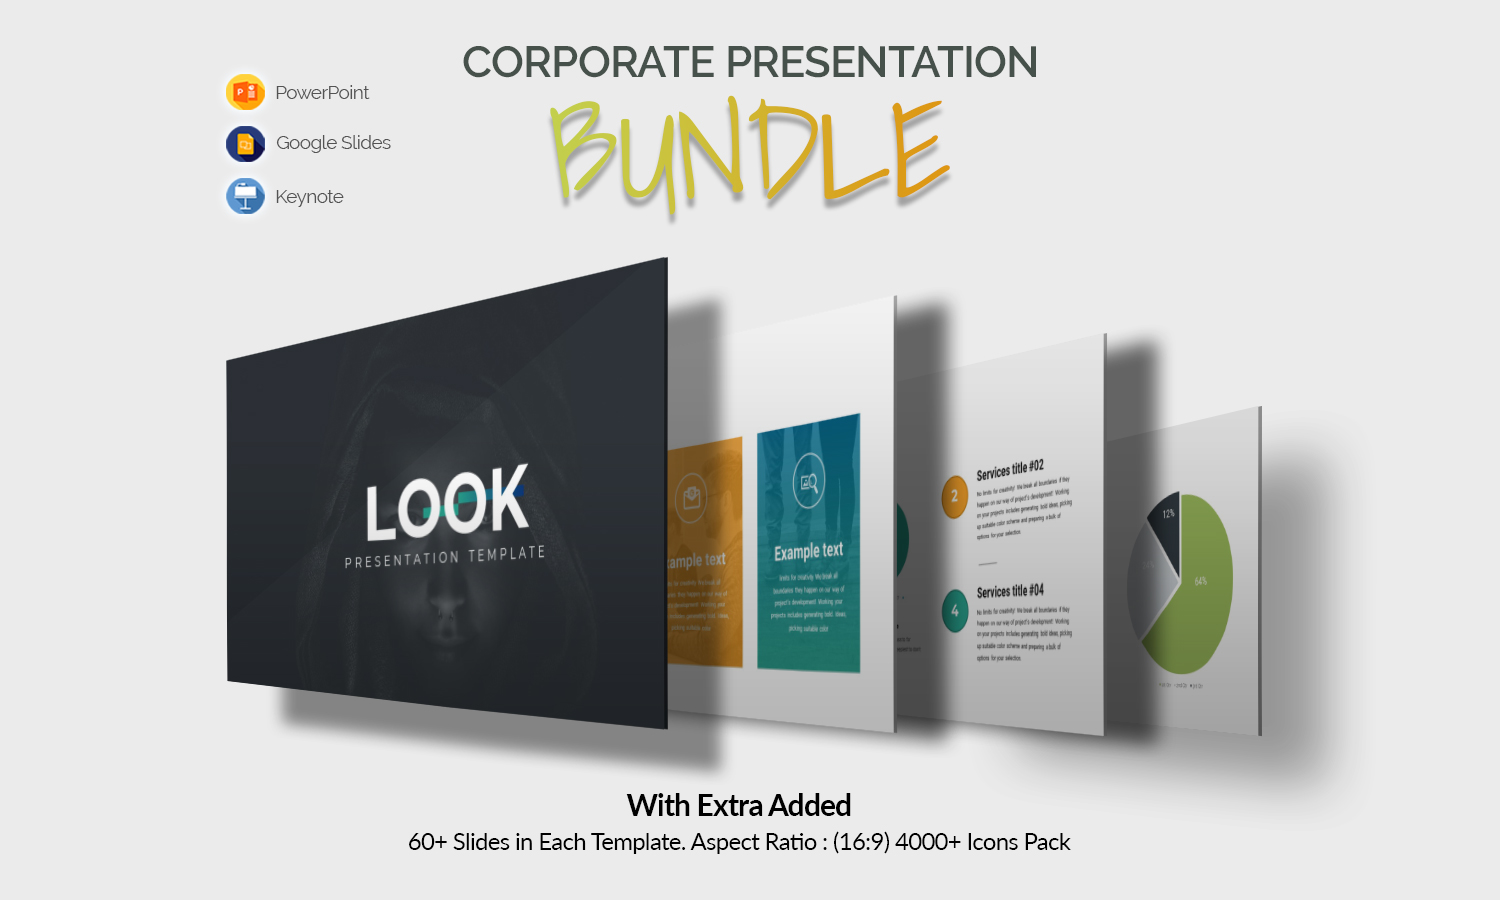 Look - Corporate Presentation Bundle